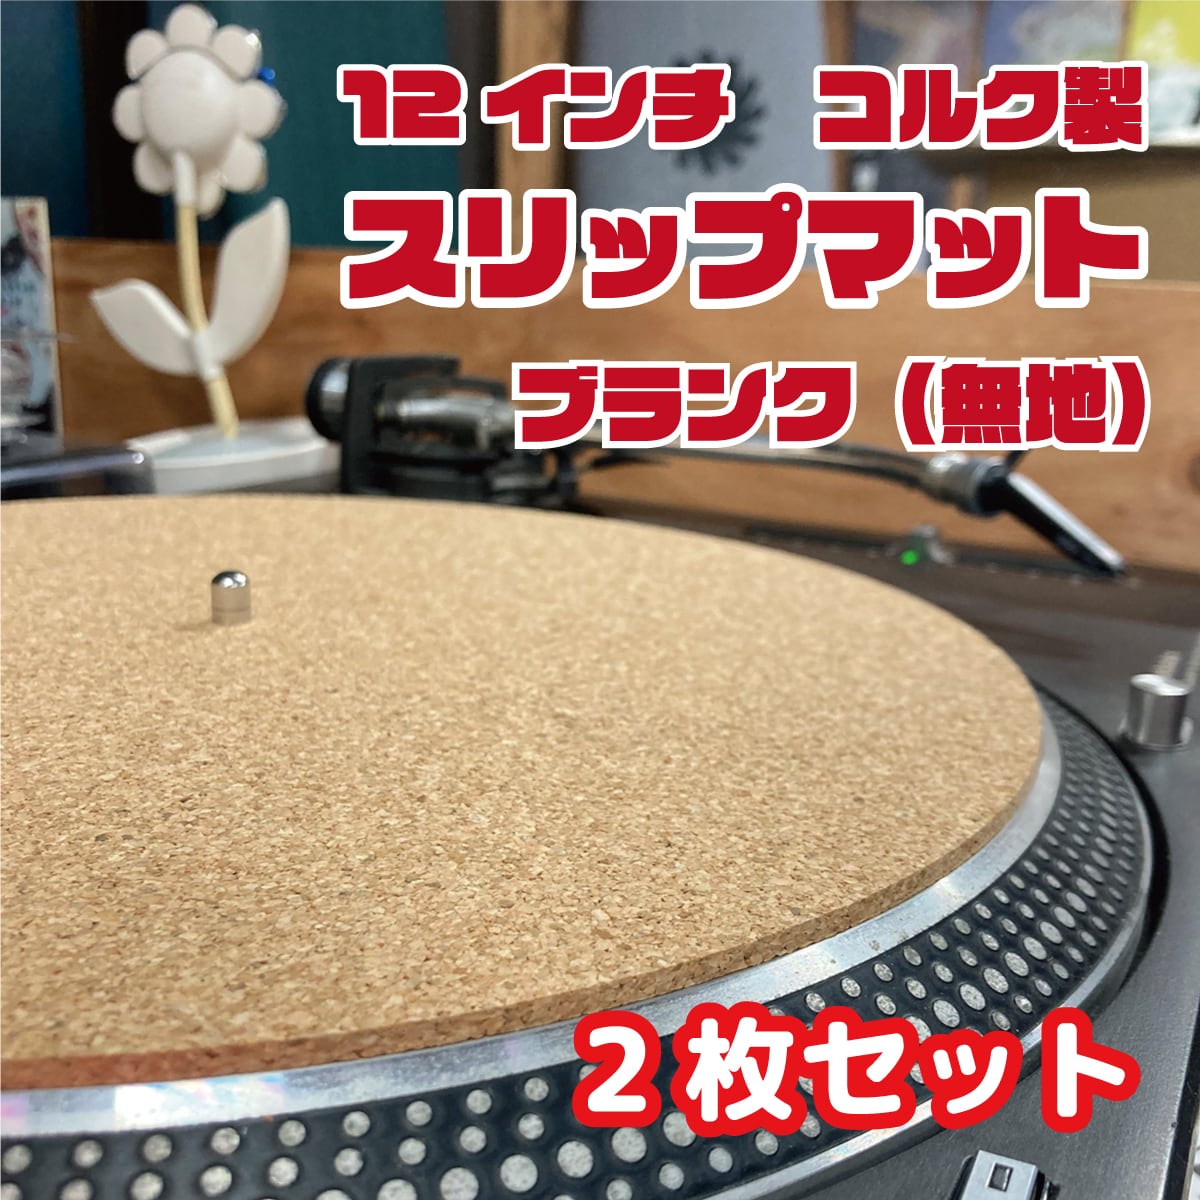 for DJ レコード 70枚 まとめセット